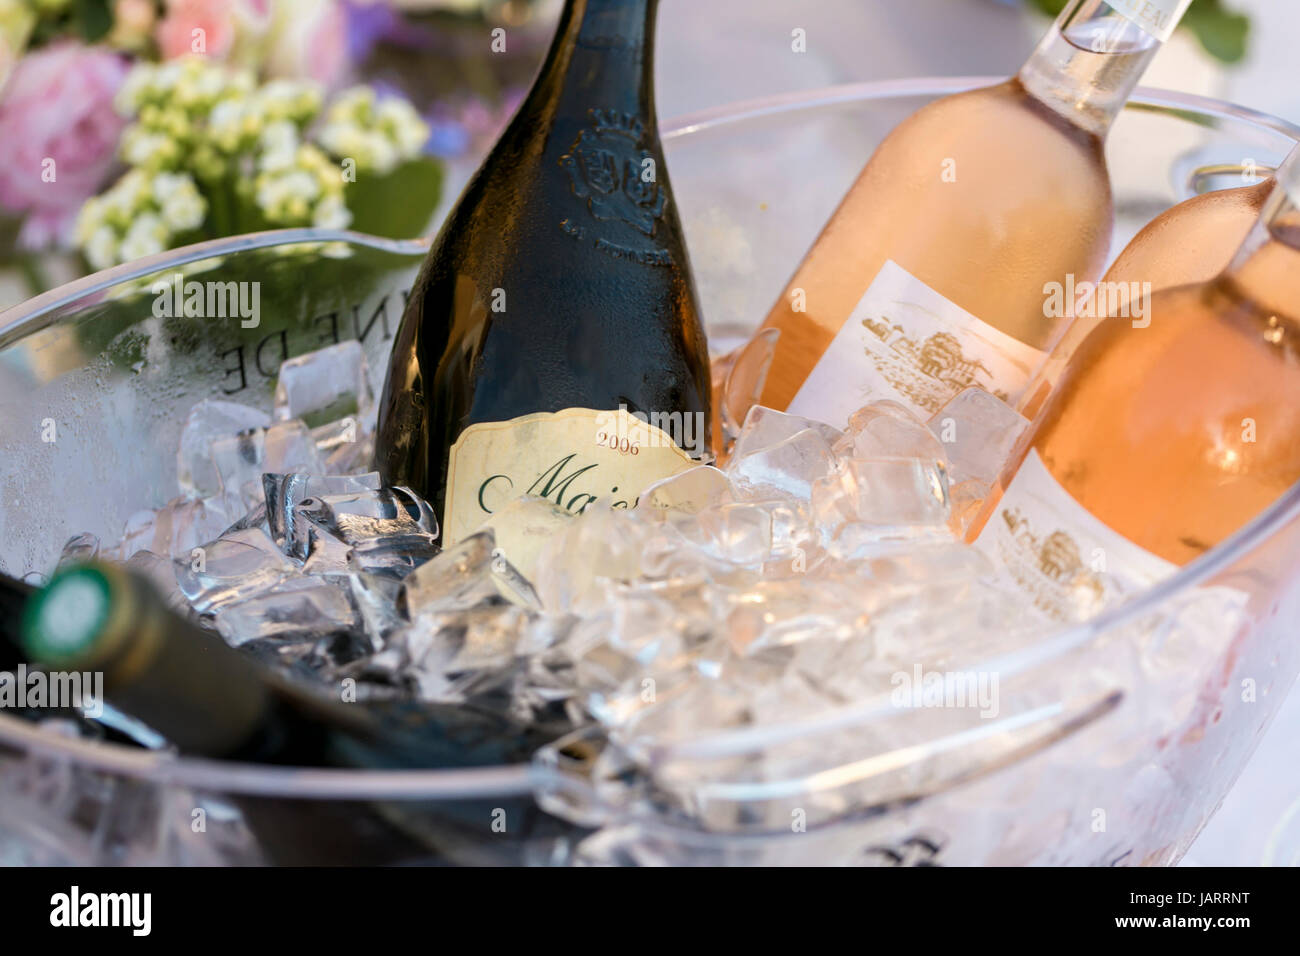 Dettagli di bottiglie di vino in ghiaccio presso un ristorante in Francia Foto Stock